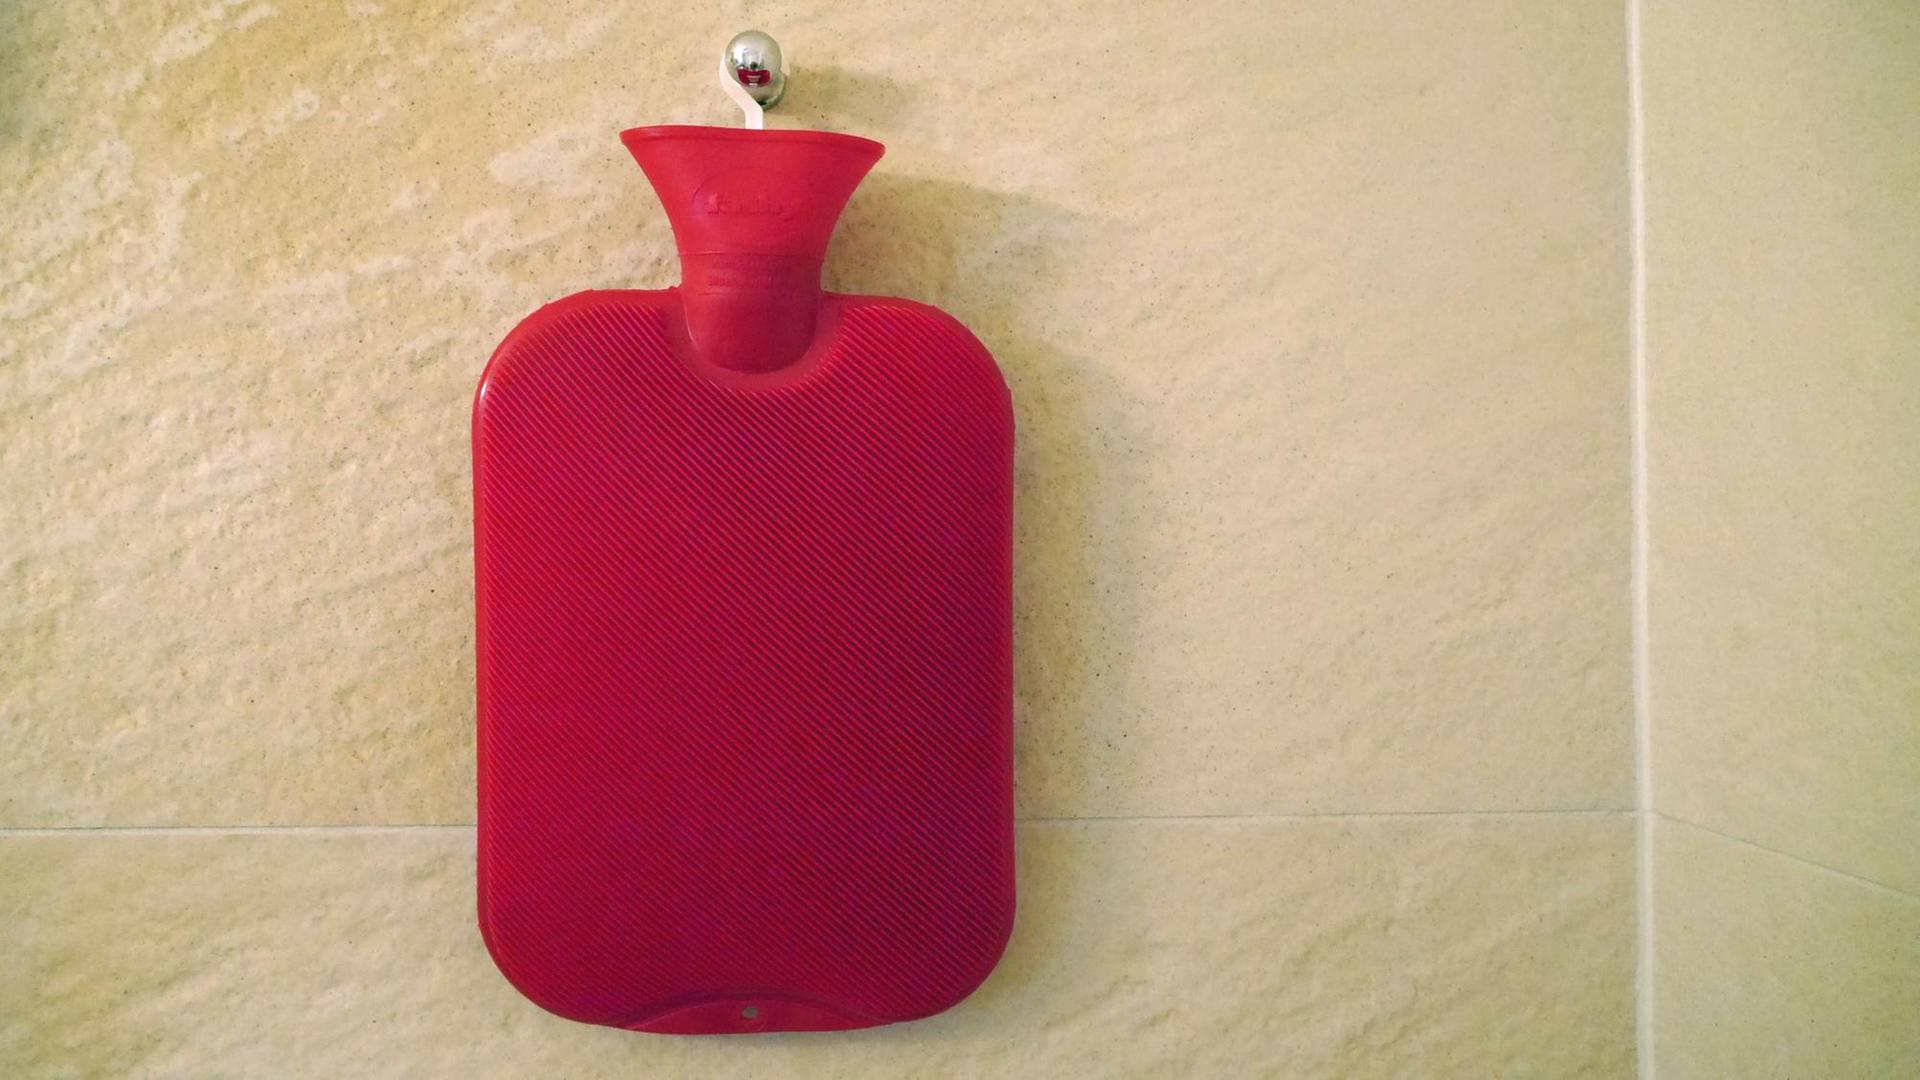 Eine rote Wärmflasche